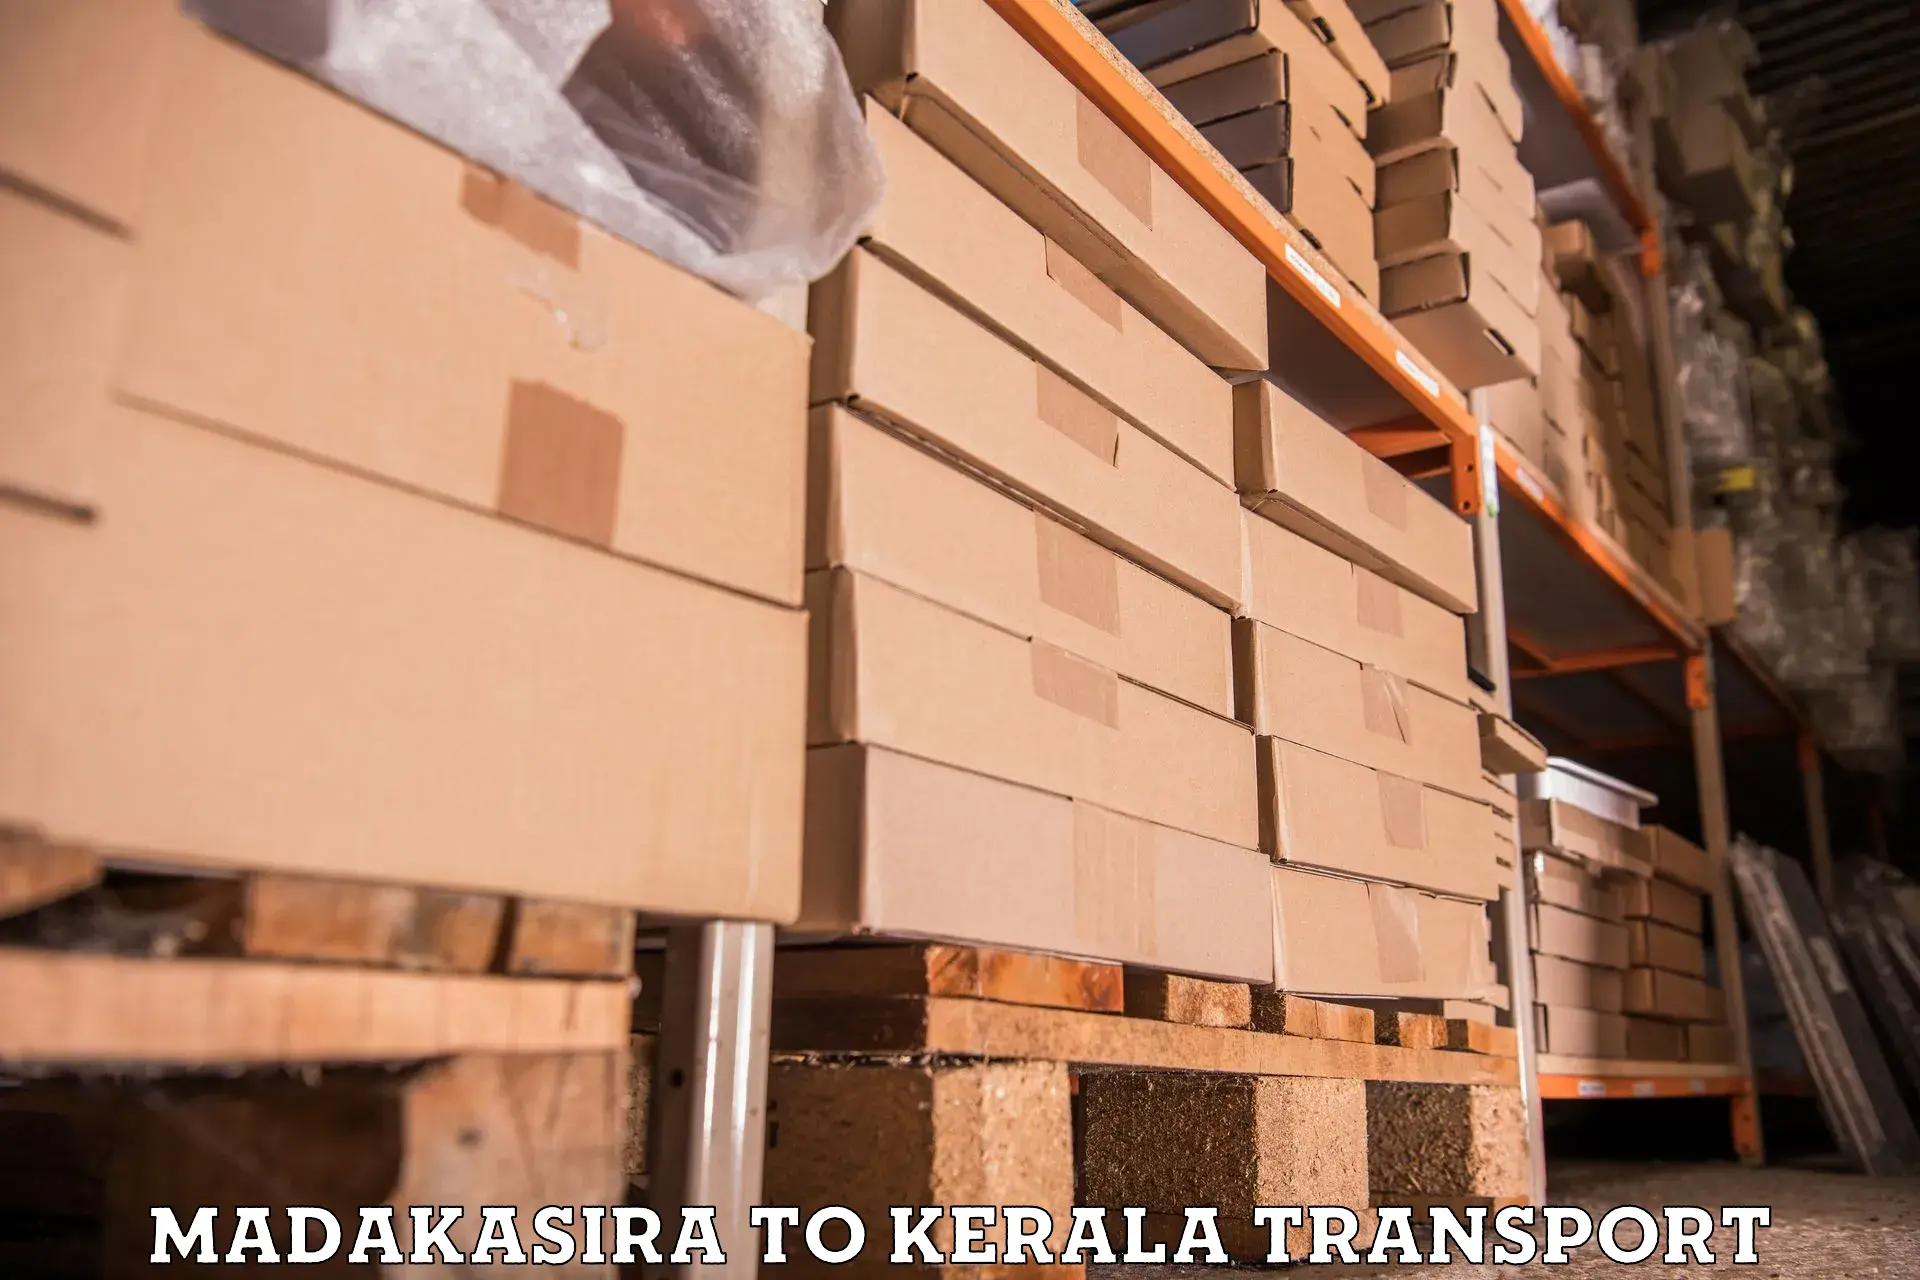 Truck transport companies in India Madakasira to Kazhakkoottam